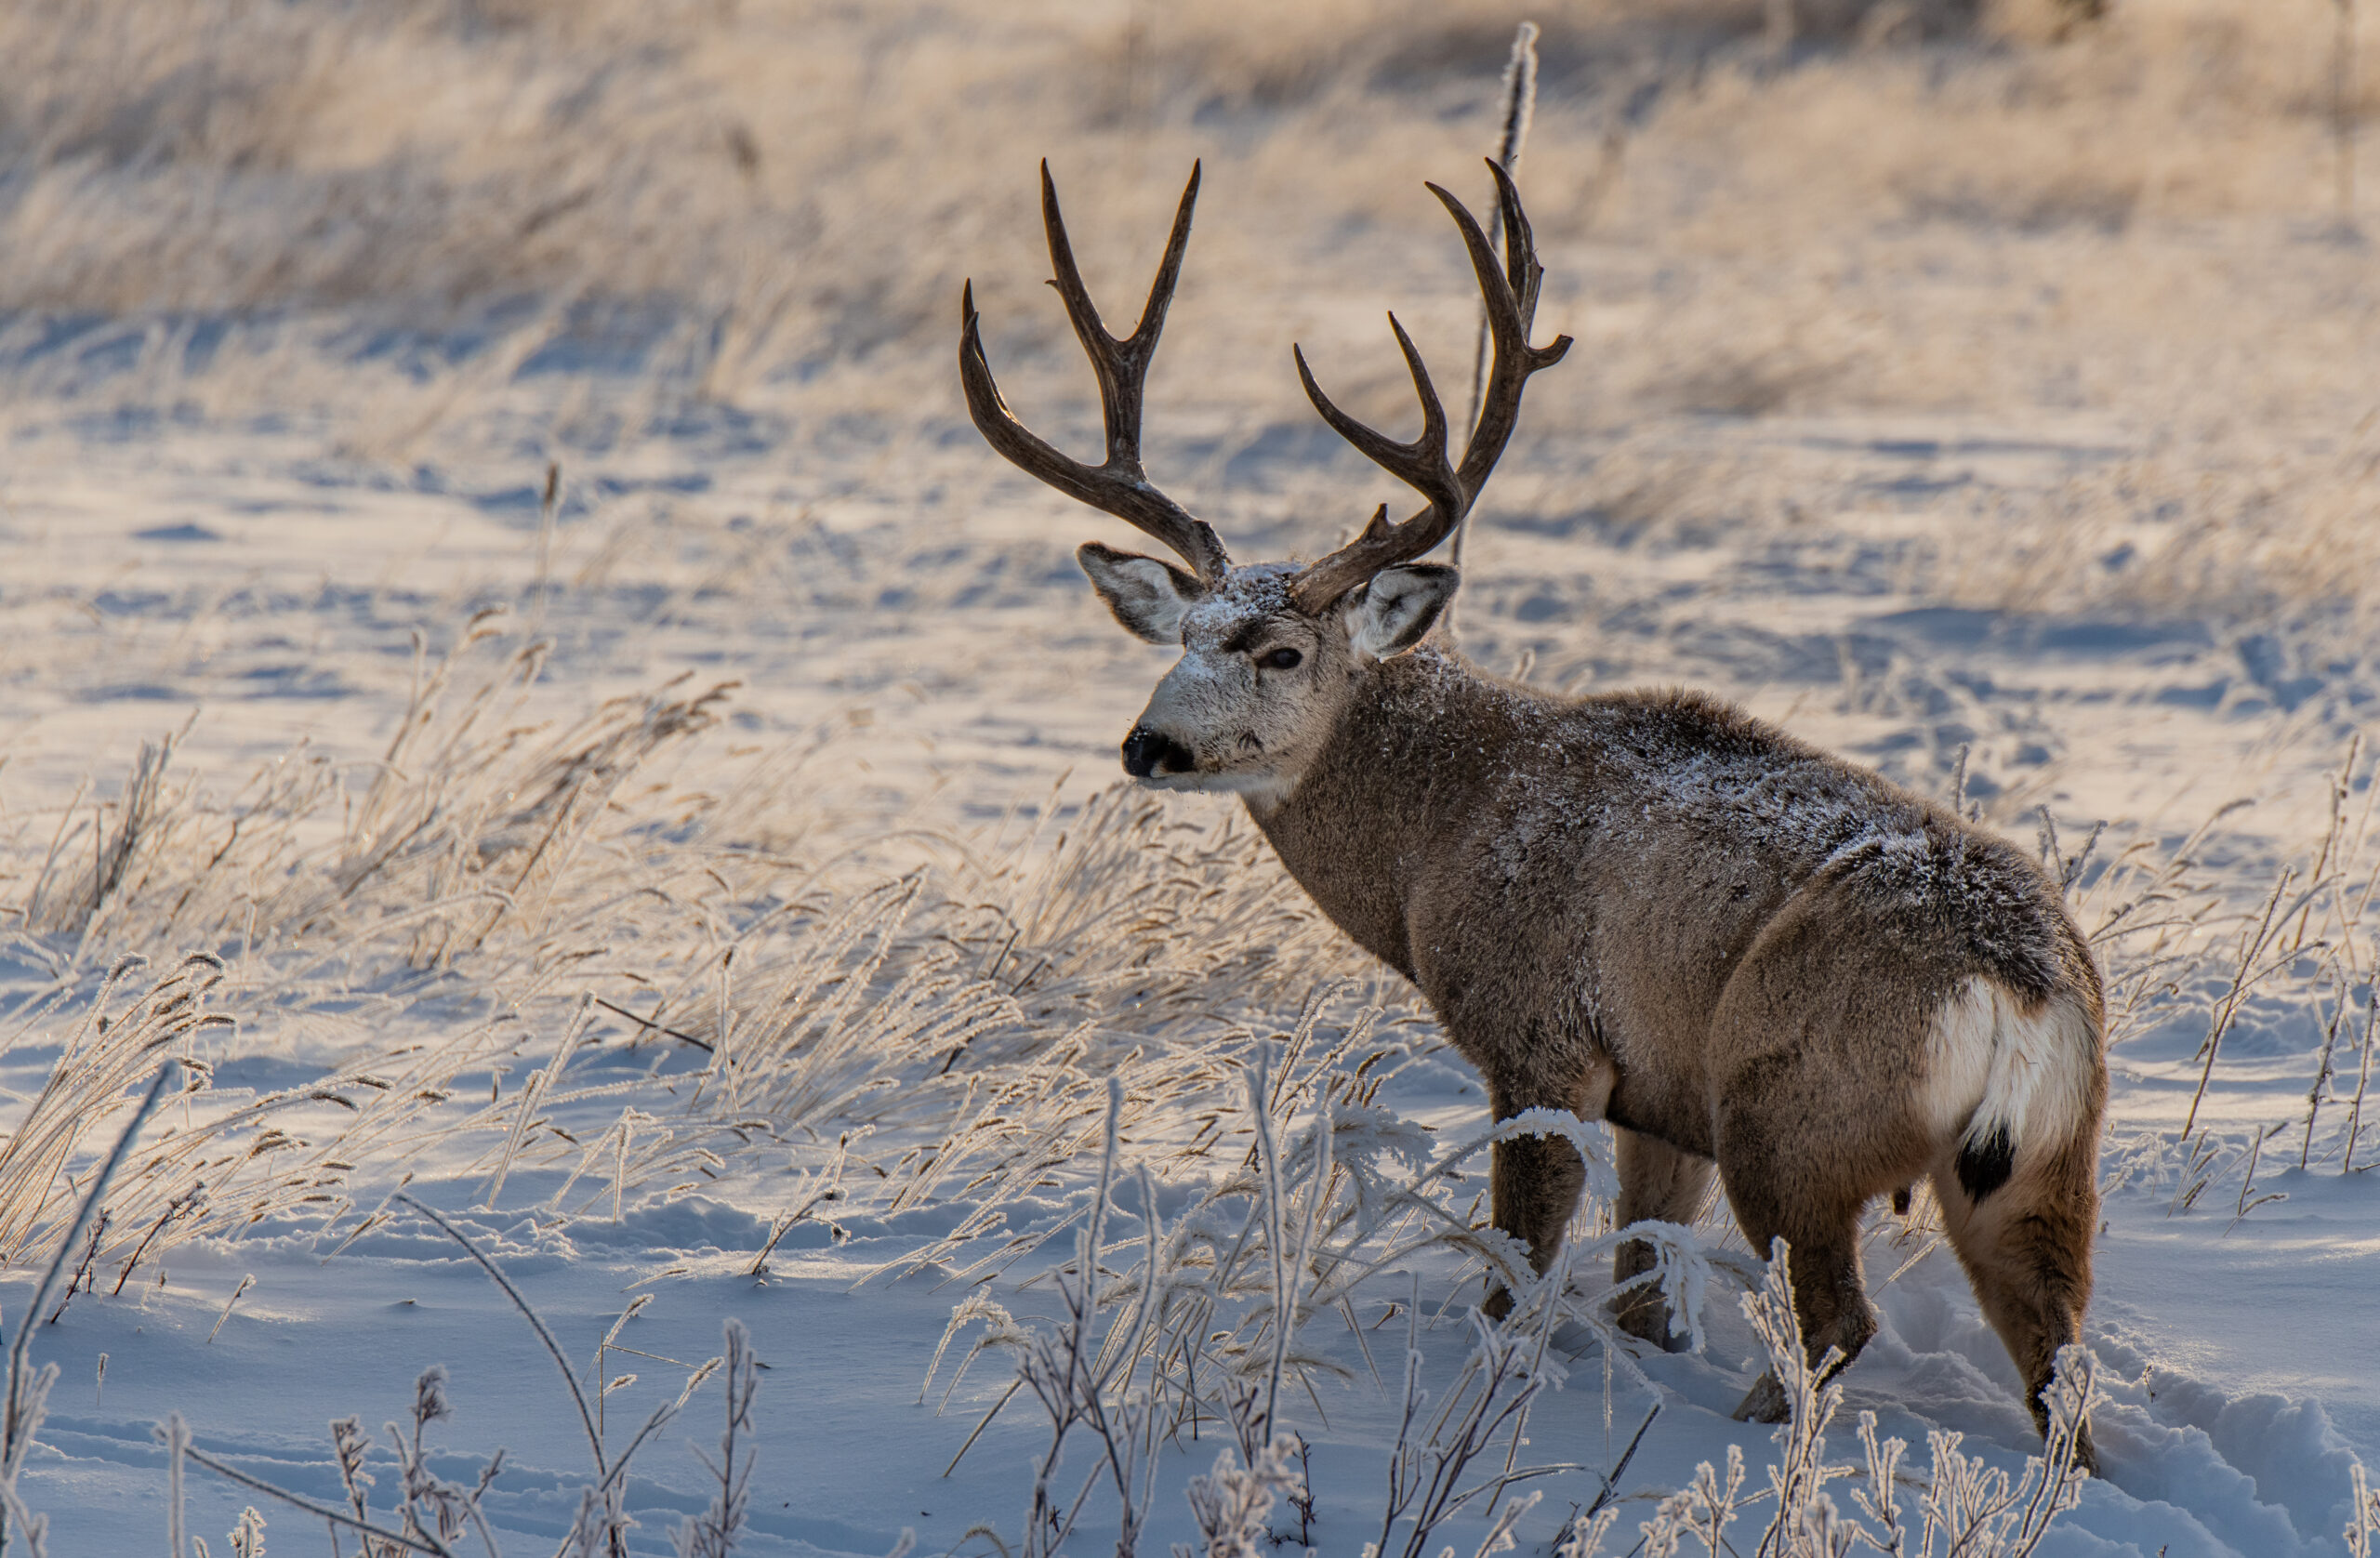 A big mule deer buck dusted in snow.